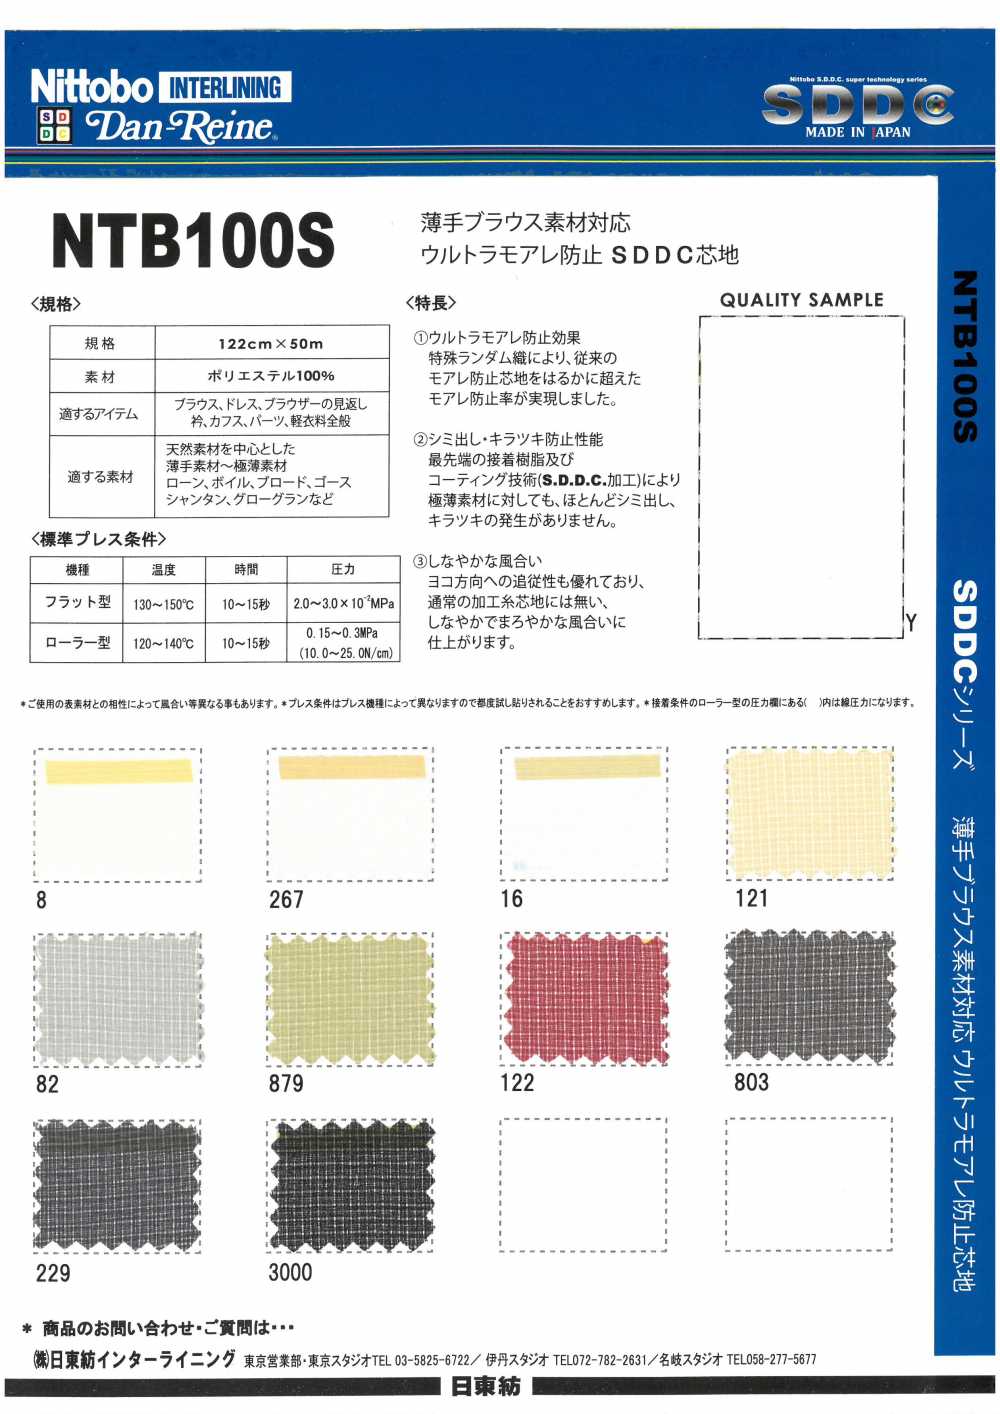 NTB100S Camicetta Sottile Materiale Compatibile Ultra Moire Prevention SDDC Interlining 15D[Interfodera] Nittobo